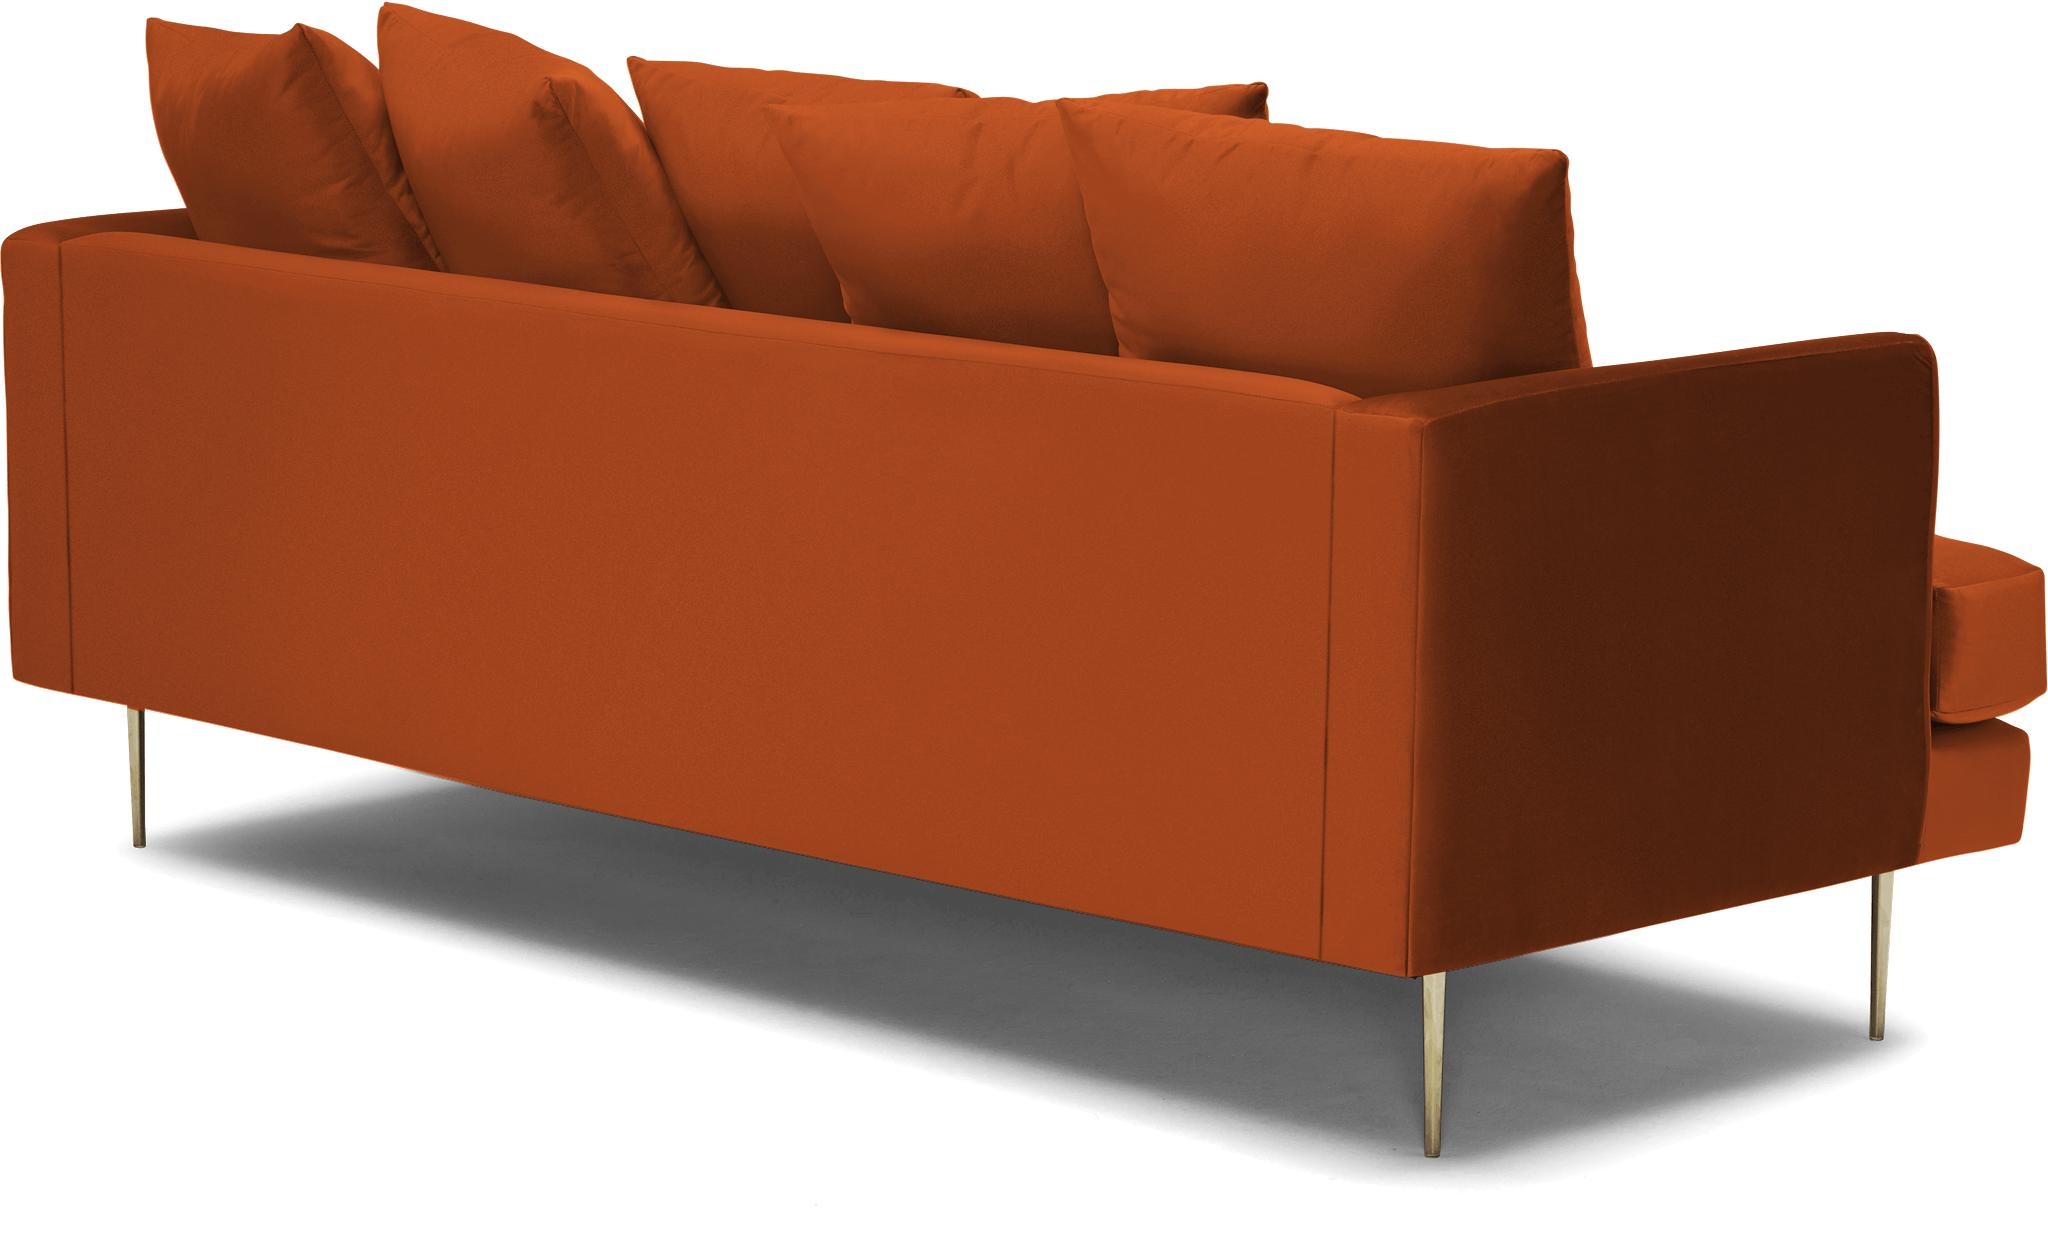 Orange Aime Mid Century Modern Sofa - Vibe Sunkist - Image 3